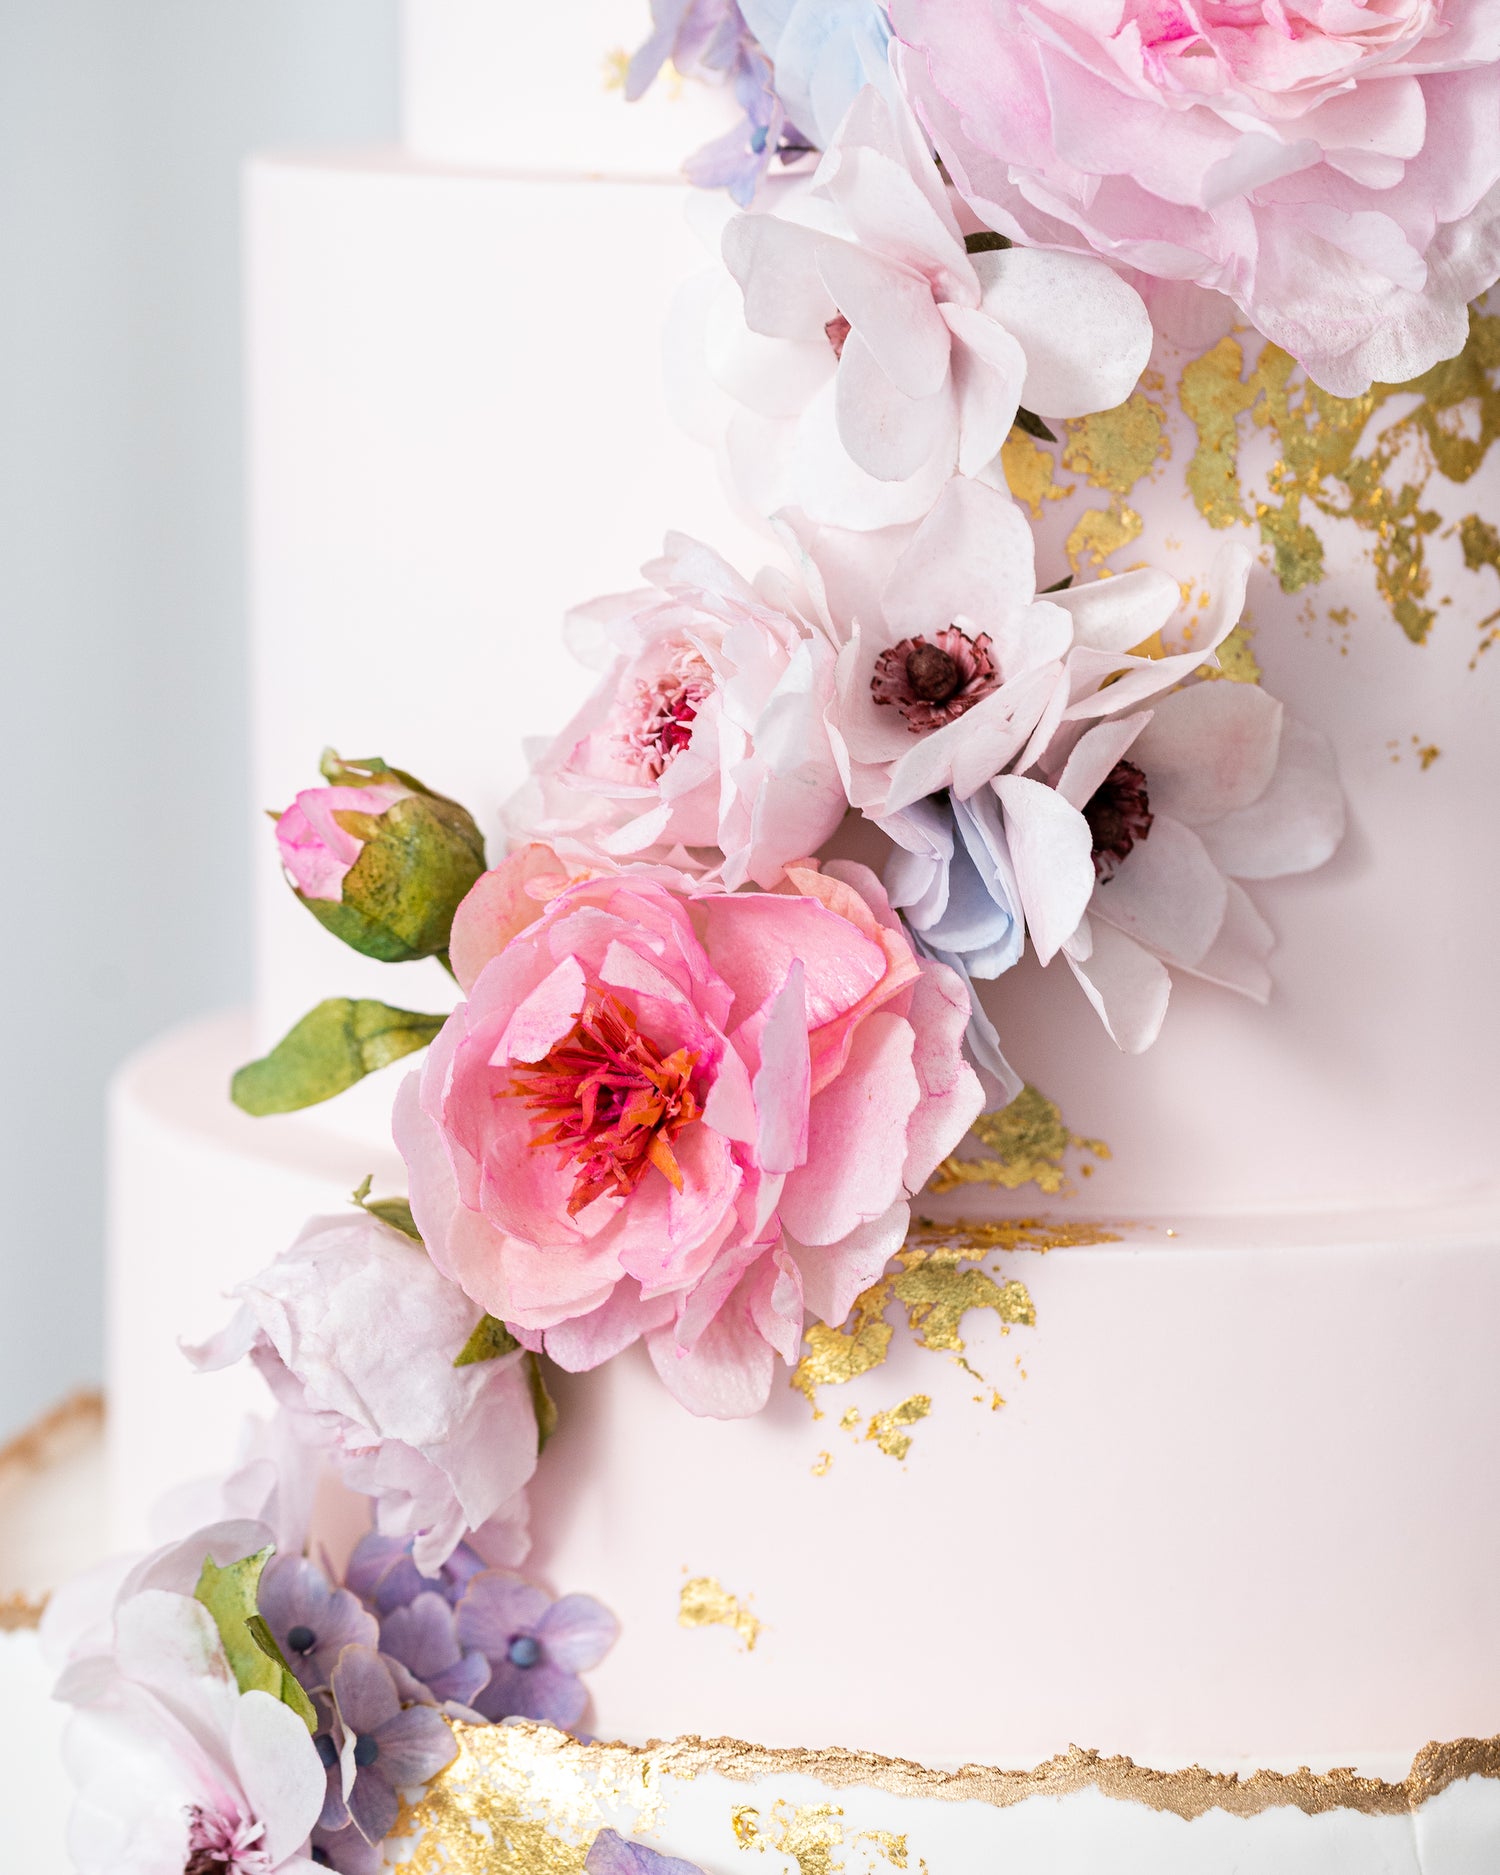 edible sugar wafer paper flowers on a wedding cake by sugar nursery